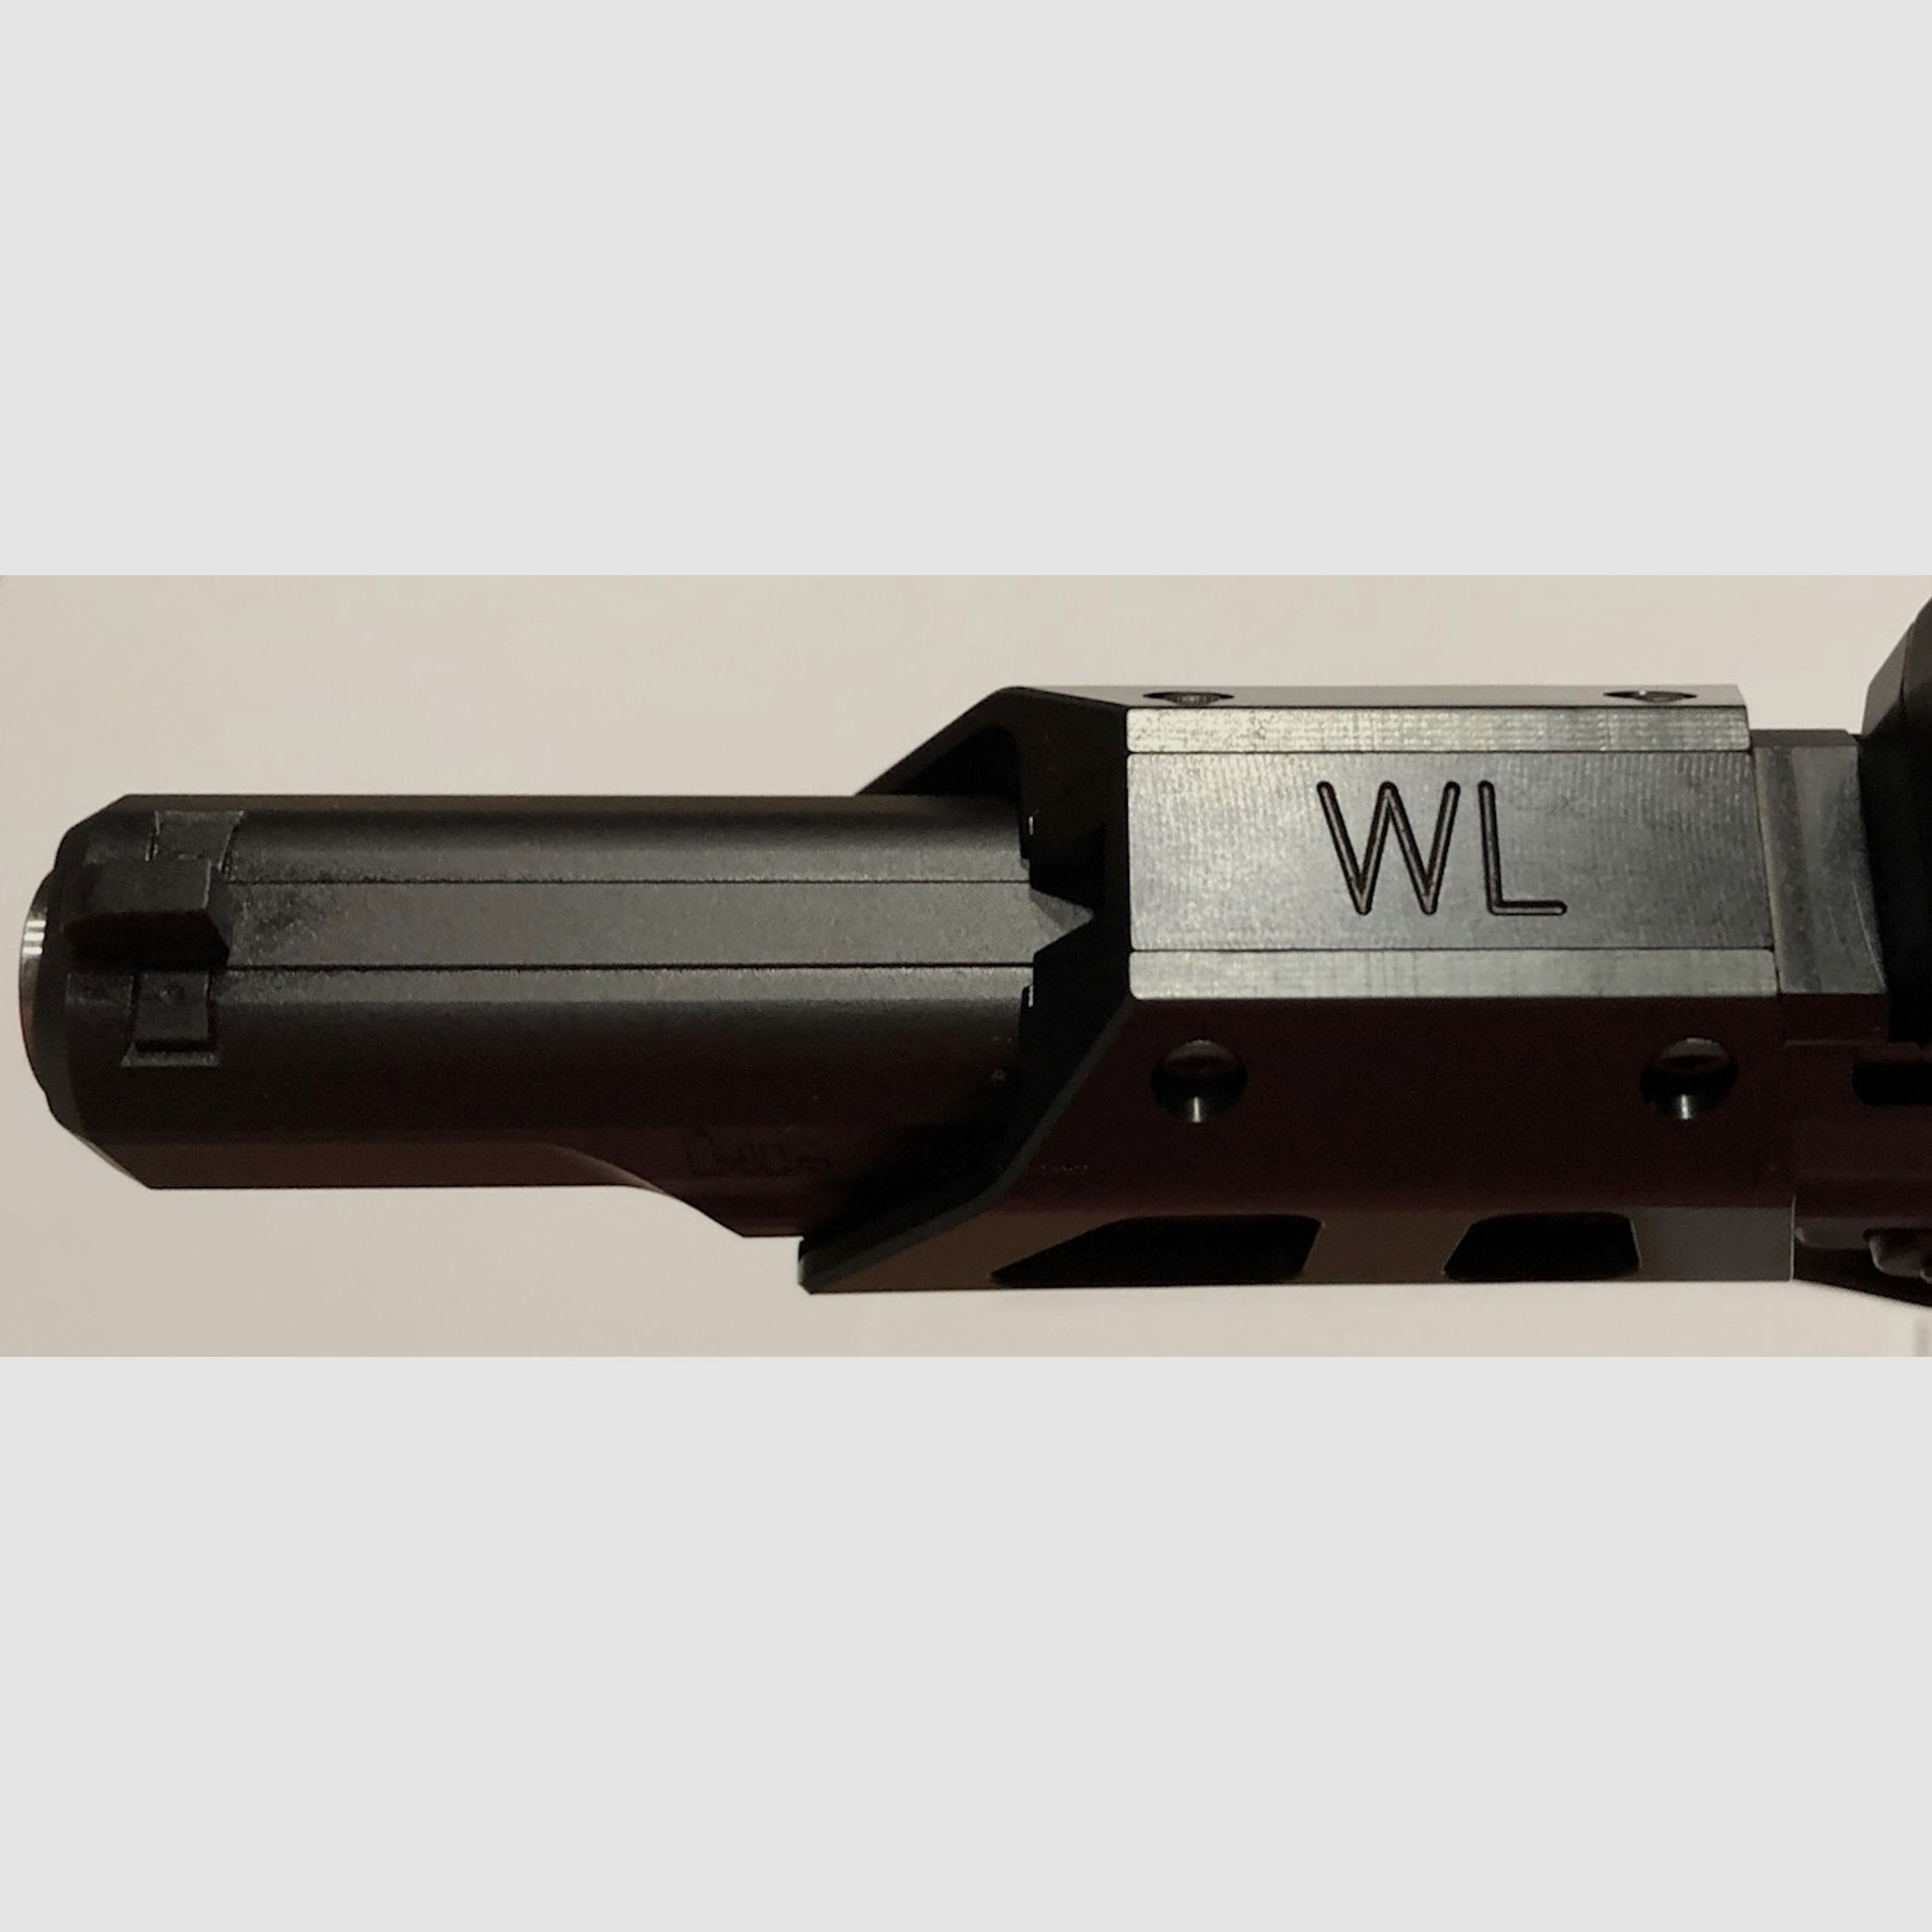 WL-USP-Montage für Heckler & Koch USP/P8 mit Picatinny (Unterseite)